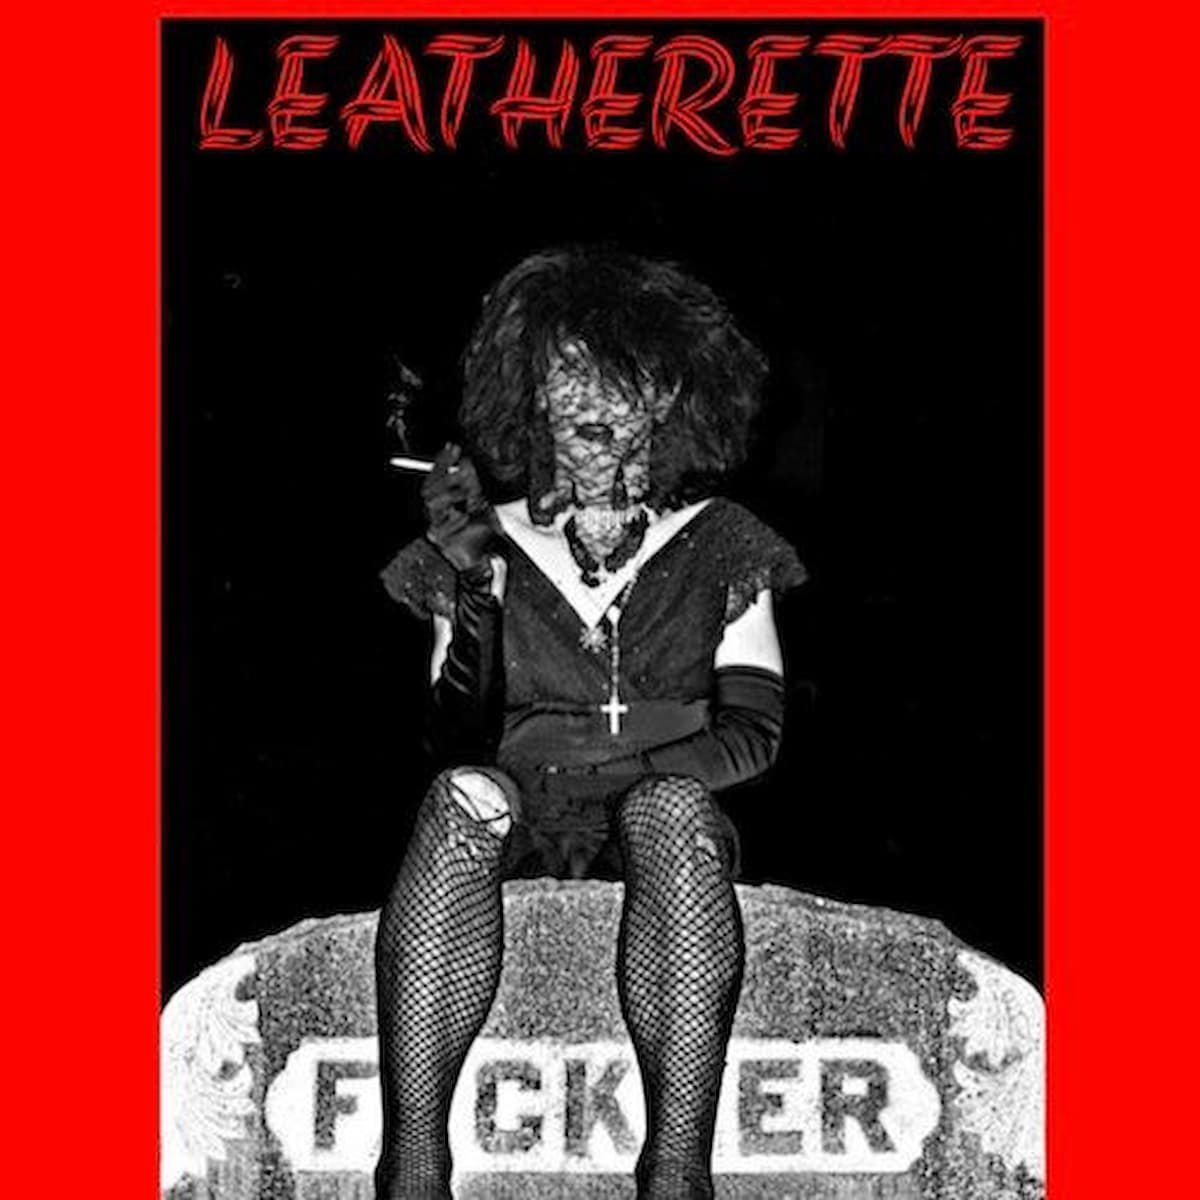 Leatherette Night